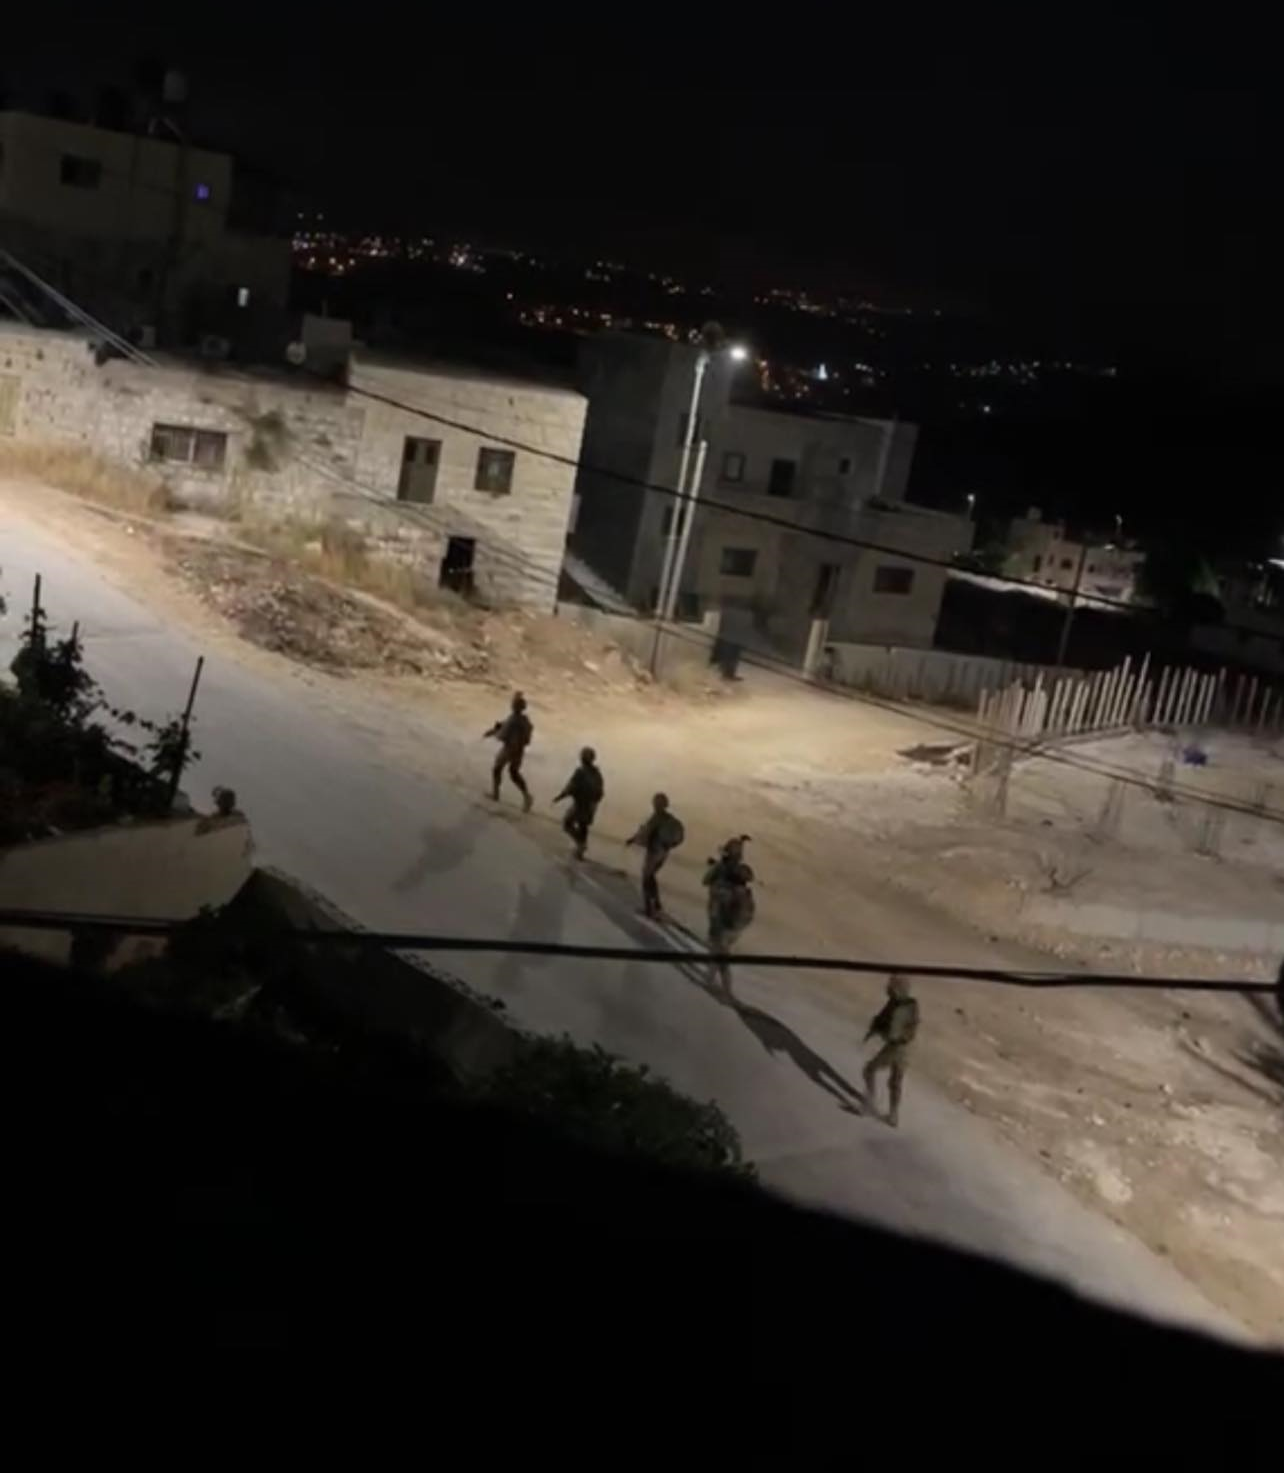 Zionistischer Feind greift einen Palästinenser in Nabi Salih an und verletzt einen weiteren in Qalqilya